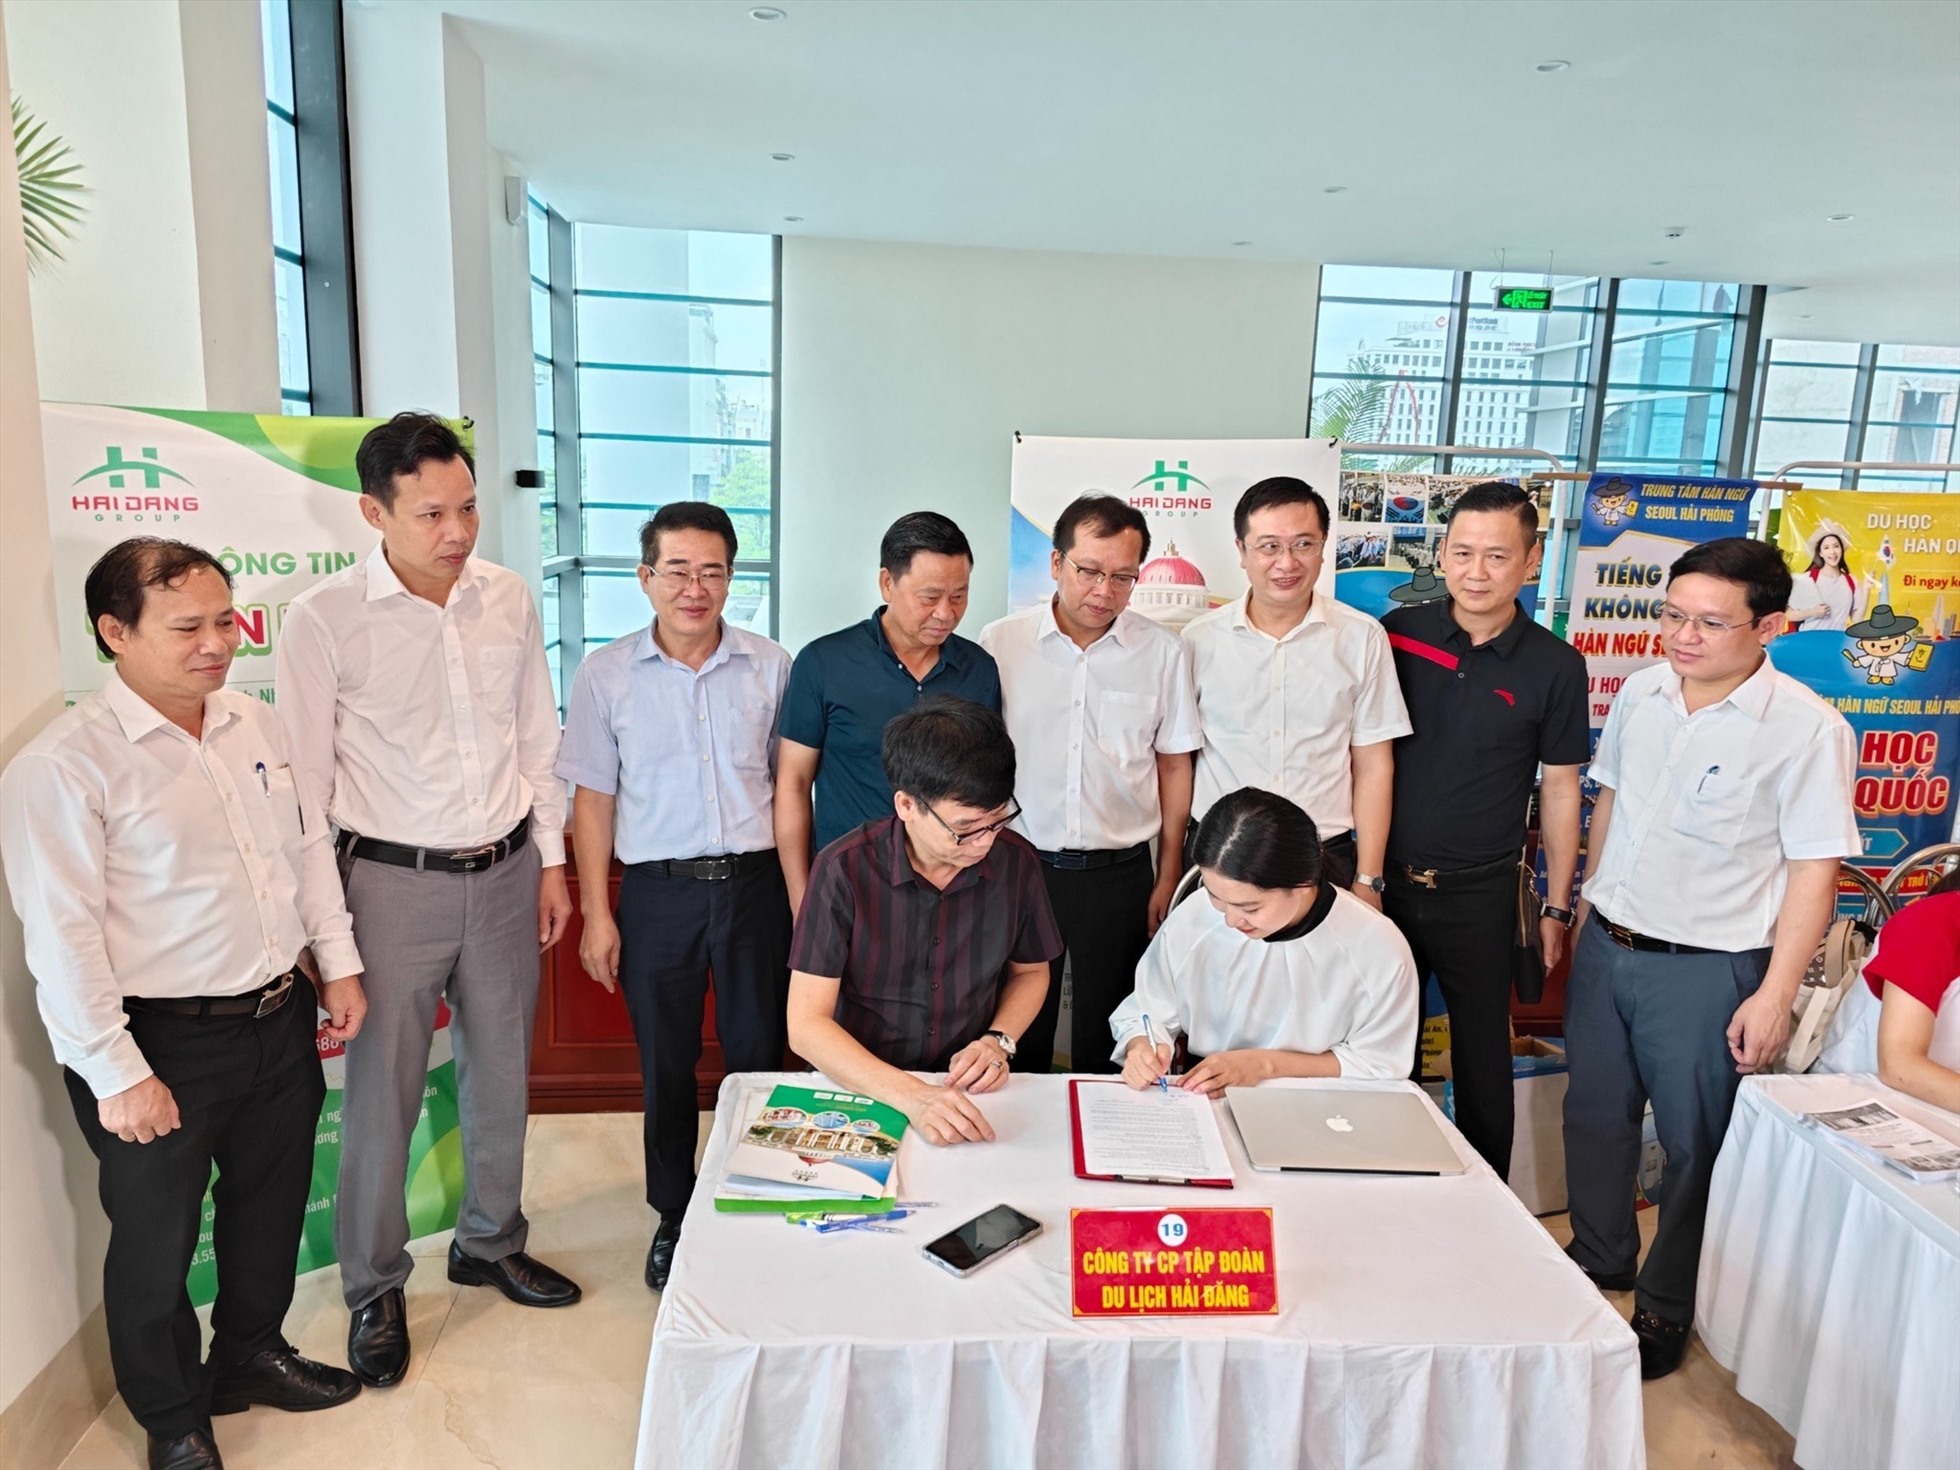 Lãnh đạo quận Ngô Quyền, Sở LĐTB&XH chứng kiến doanh nghiệp ký hợp đồng với người lao động tại phiên giao dịch. Ảnh: Cổng TTĐT quận Ngô Quyền